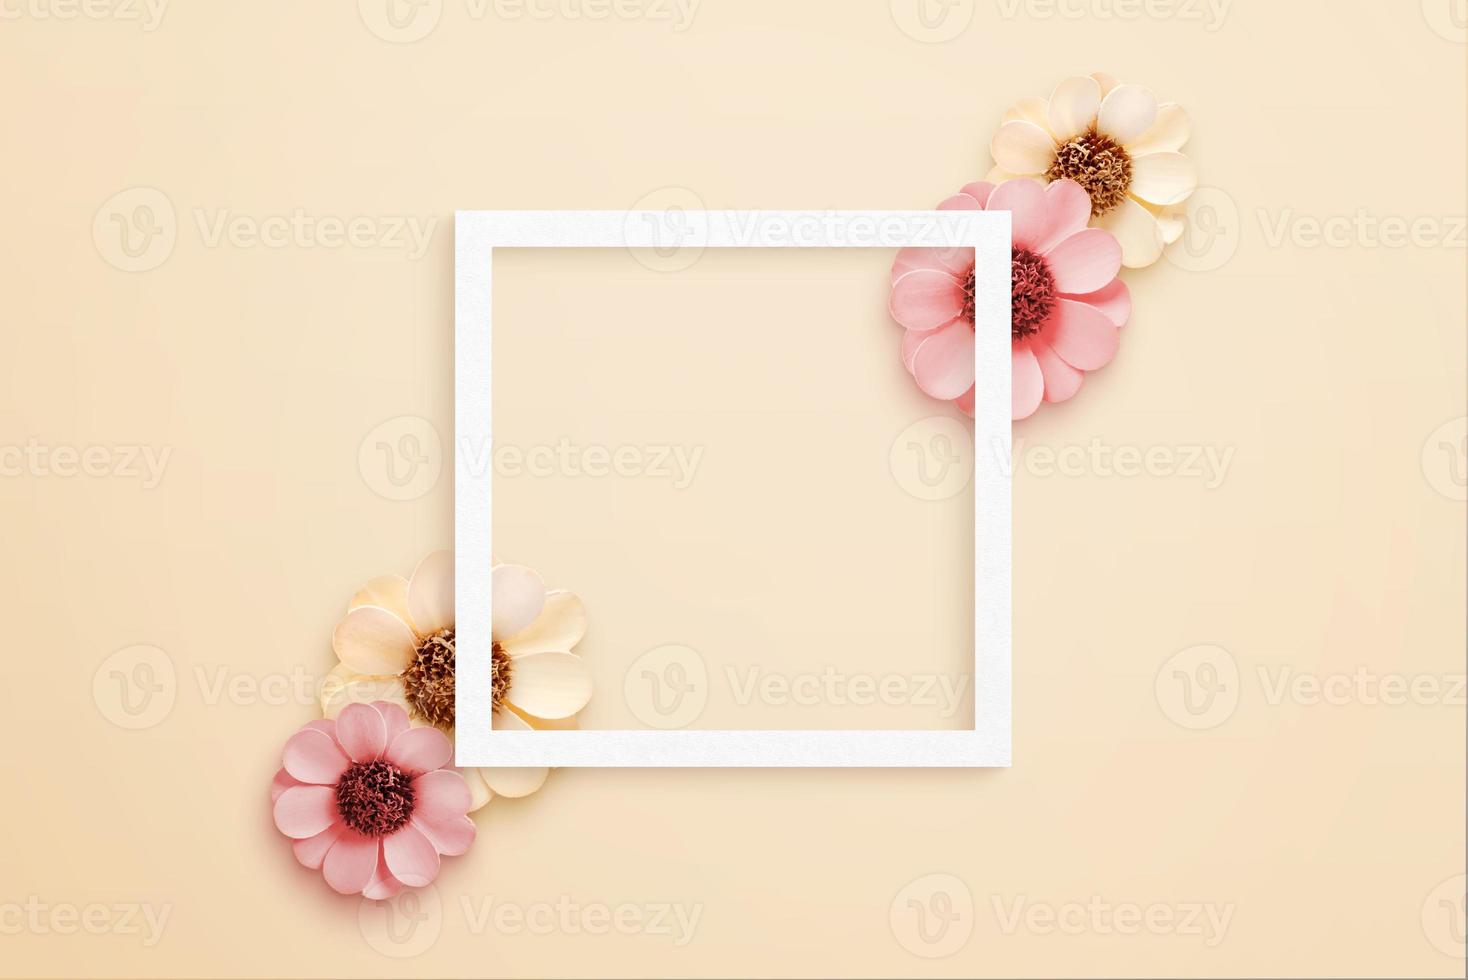 marco cuadrado de papel blanco rodeado de flores de primavera. vista superior, composición plana foto